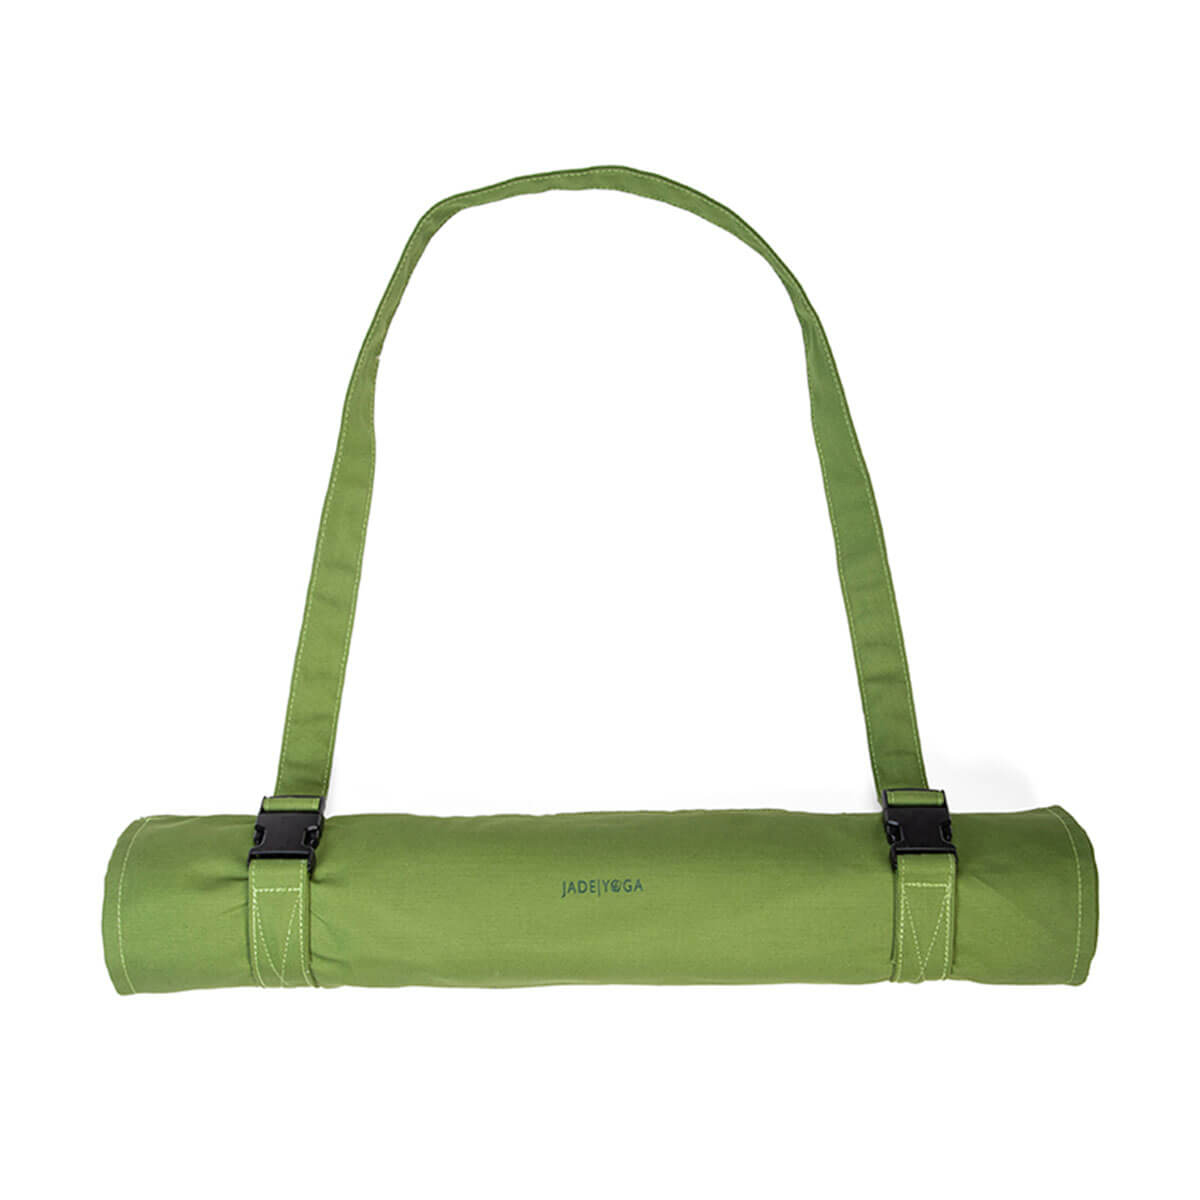 SHAR Yoga bag（Green）, large yoga mat, yoga bag, foldable carry bag, carry  bag, sports bag, travel bag, workout bag, travel bag, travel bag, for men  and women , yoga, gym, swimming, etc. 